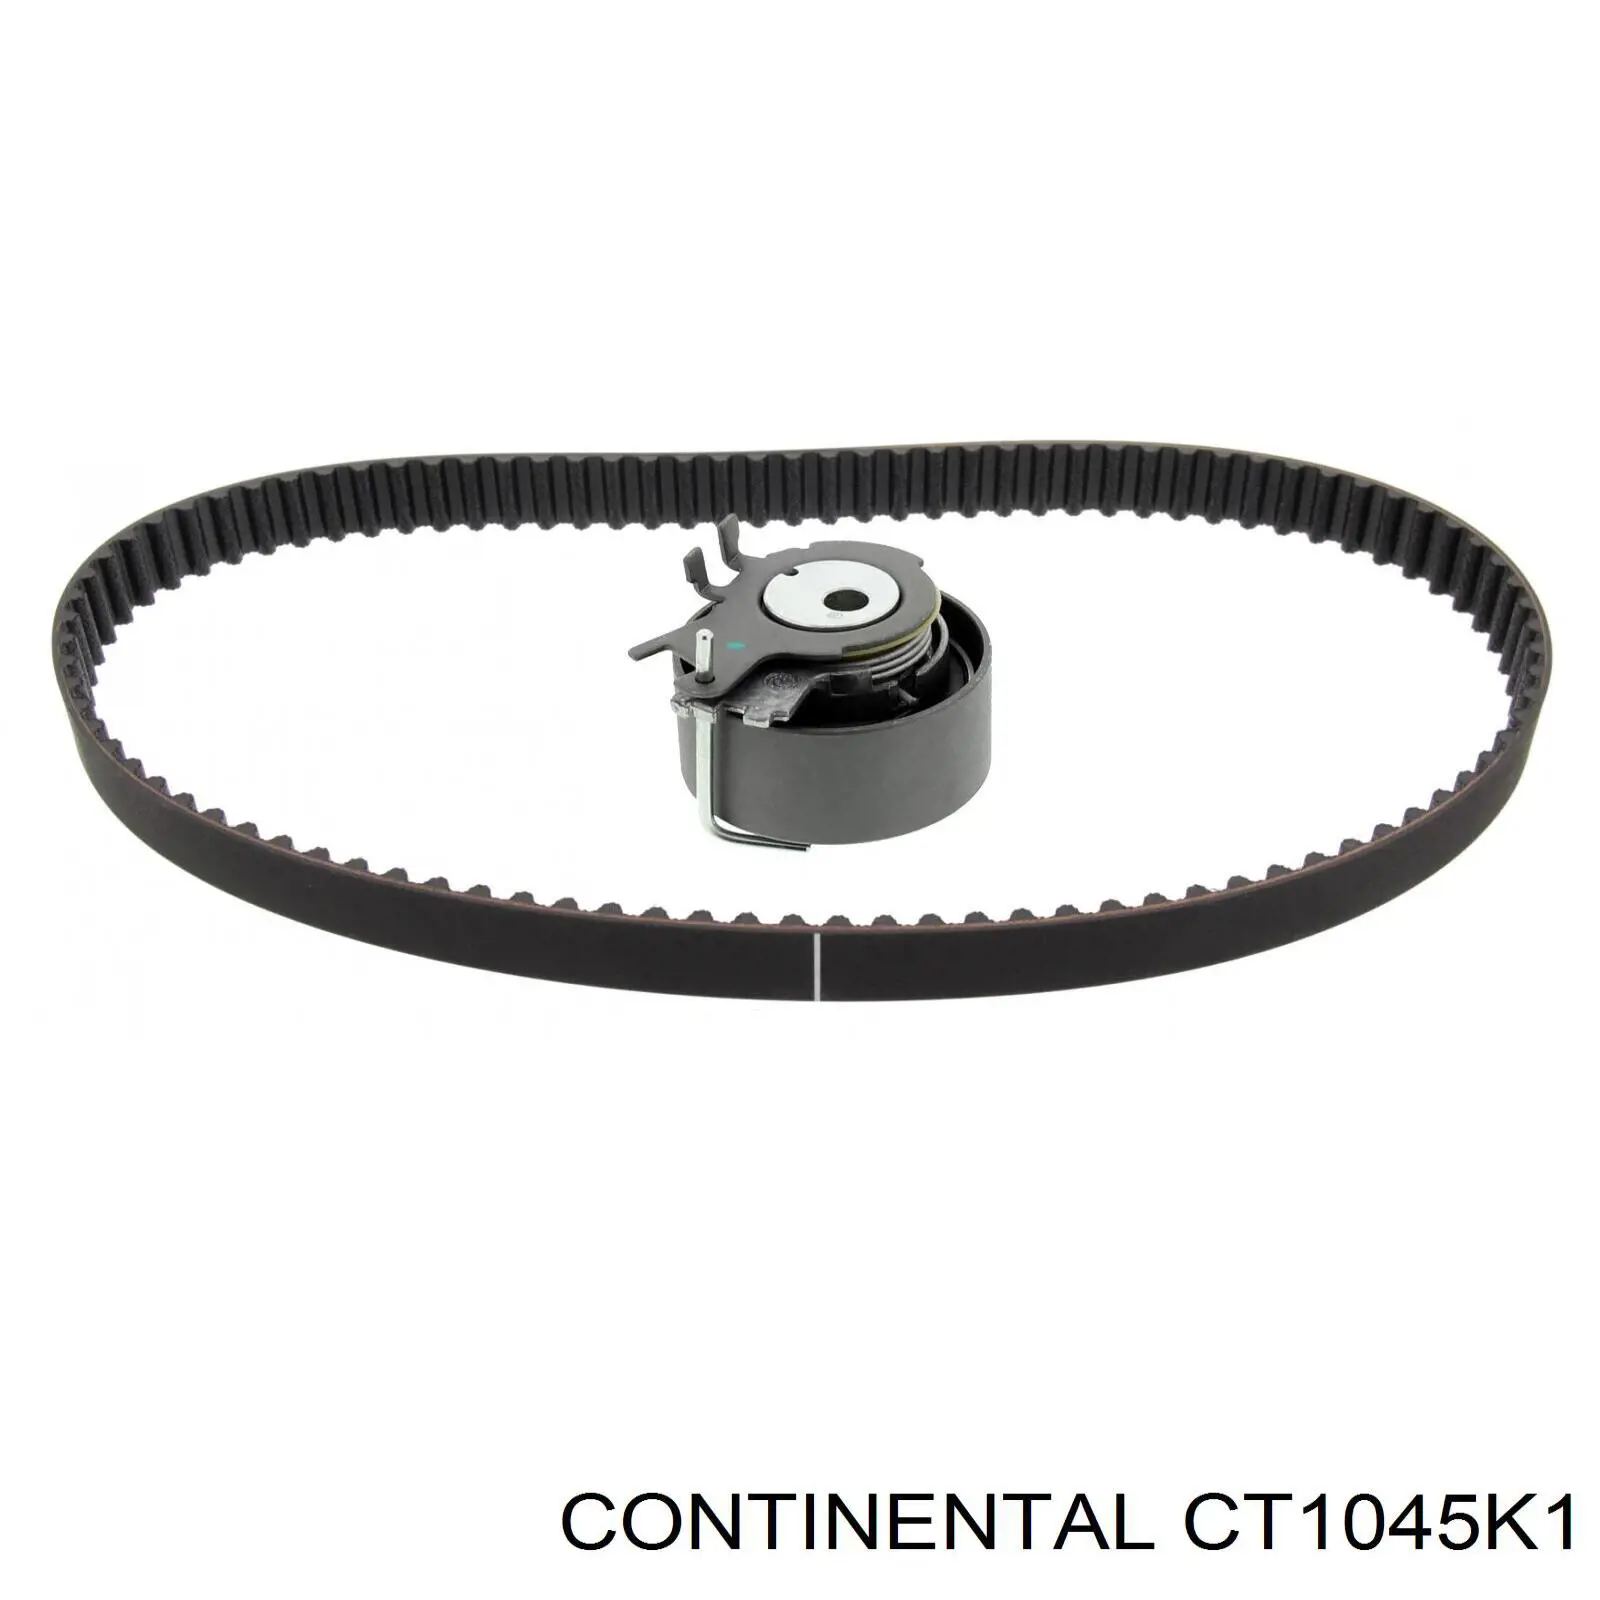 CT1045K1 Continental/Siemens kit de correa de distribución